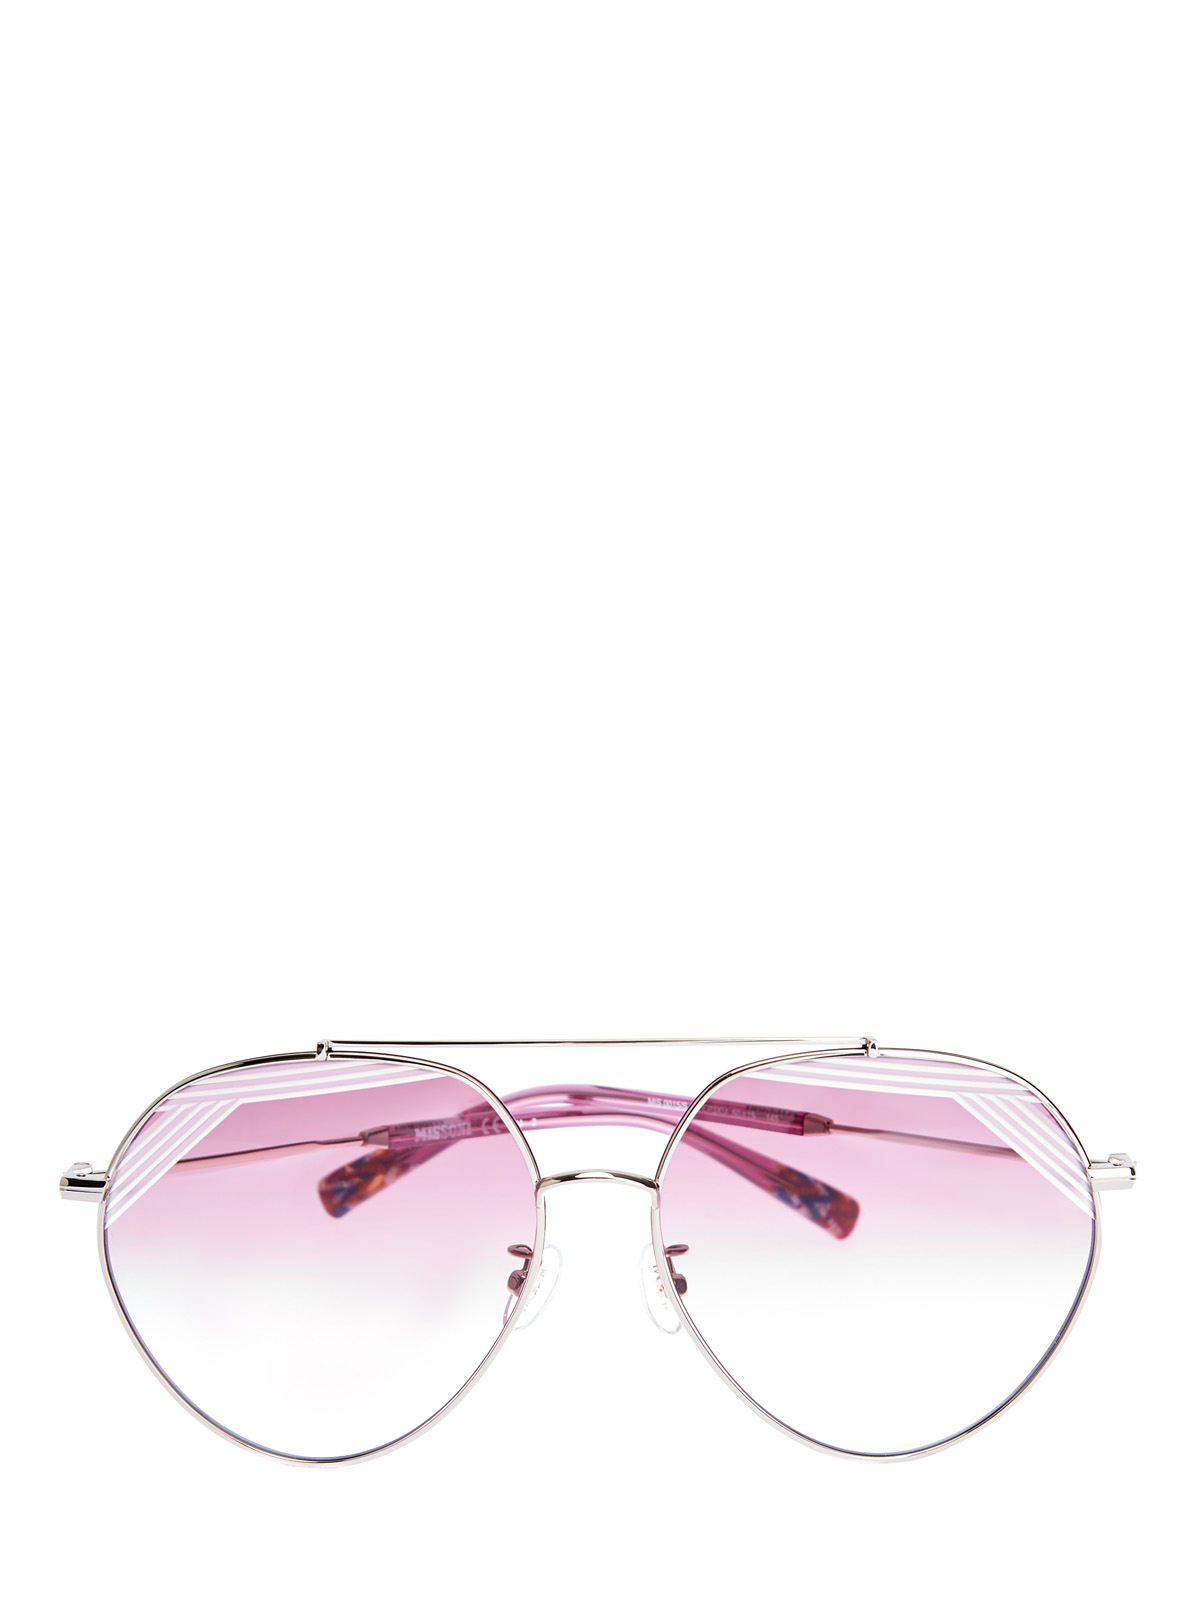 Солнцезащитные очки-oversize в тонкой металлической оправе MISSONI, цвет розовый, размер S;M;L - фото 1